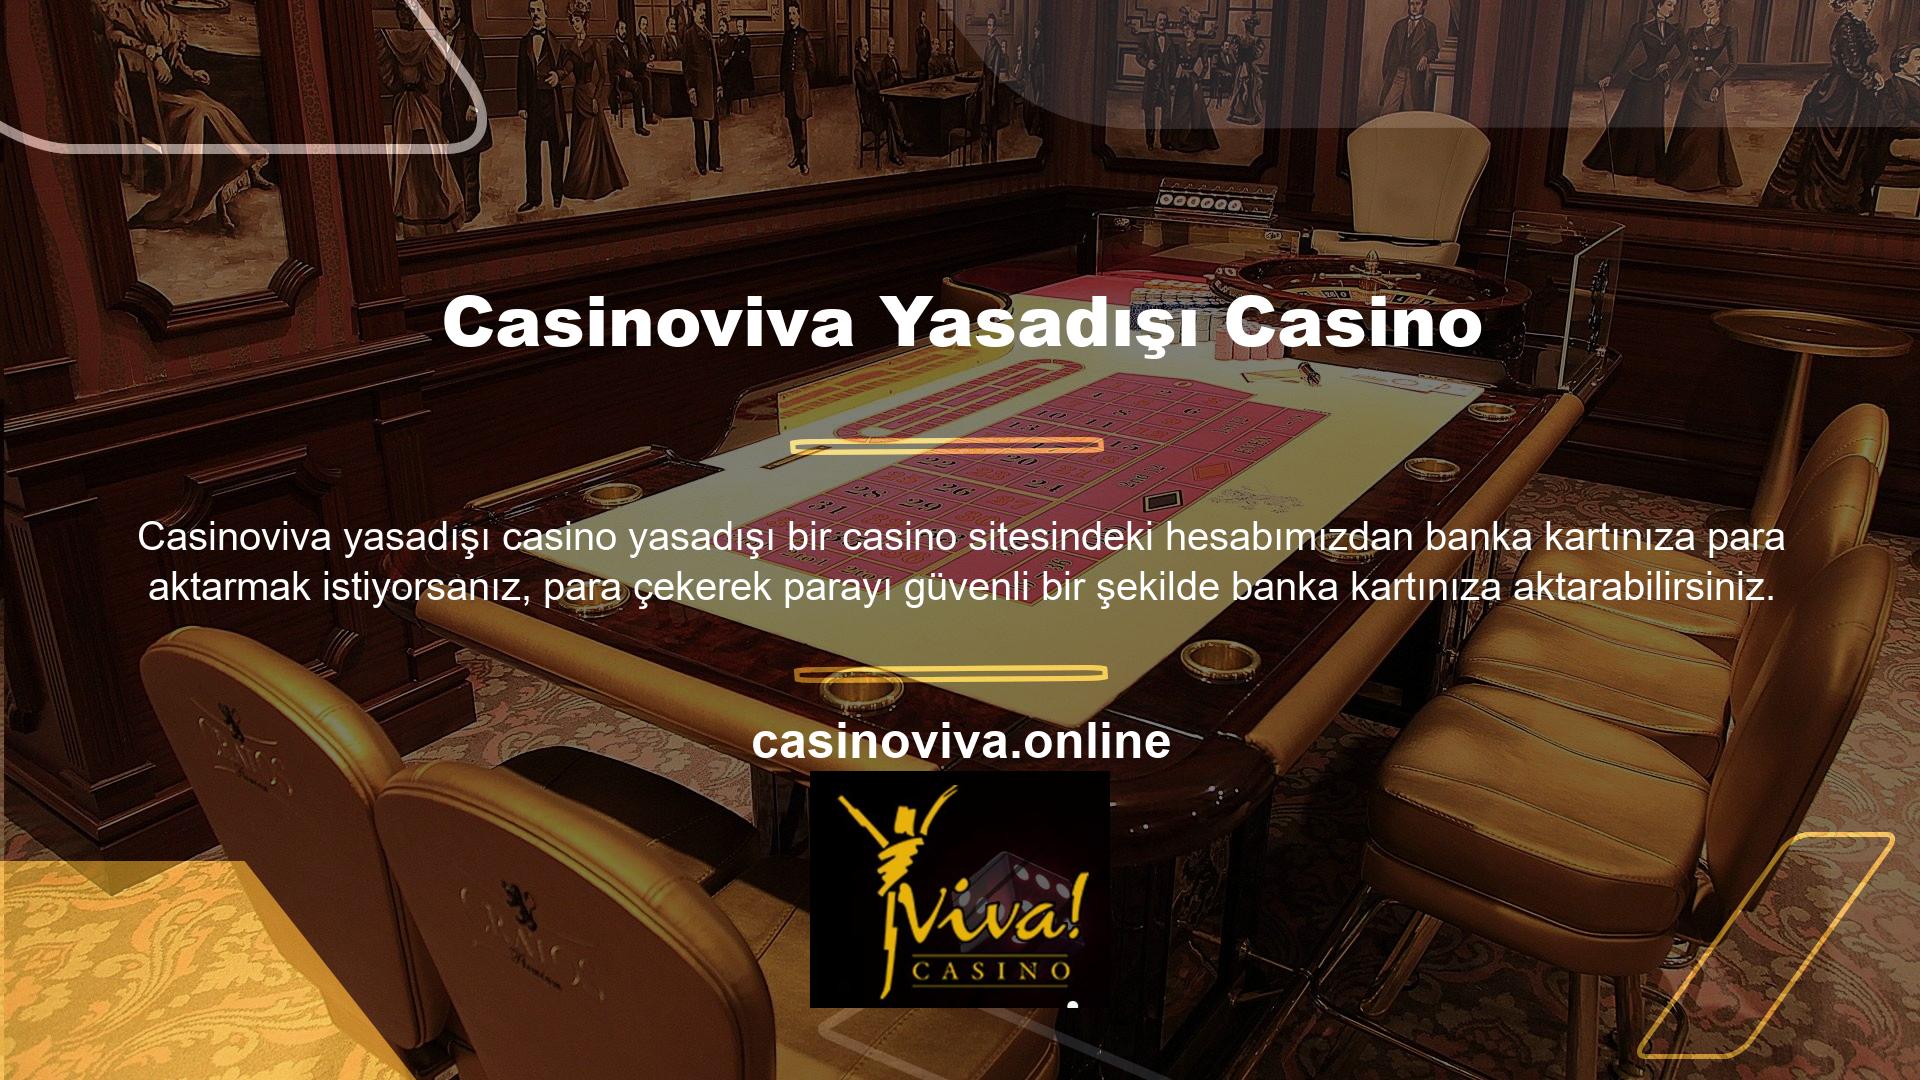 Casinoviva izleme oyunları, renkli oyunları ve yüksek oranlı bahis seçenekleriyle Casinoviva nitelikleri çeşitli faktörlere bağlı olarak sürekli değişmektedir